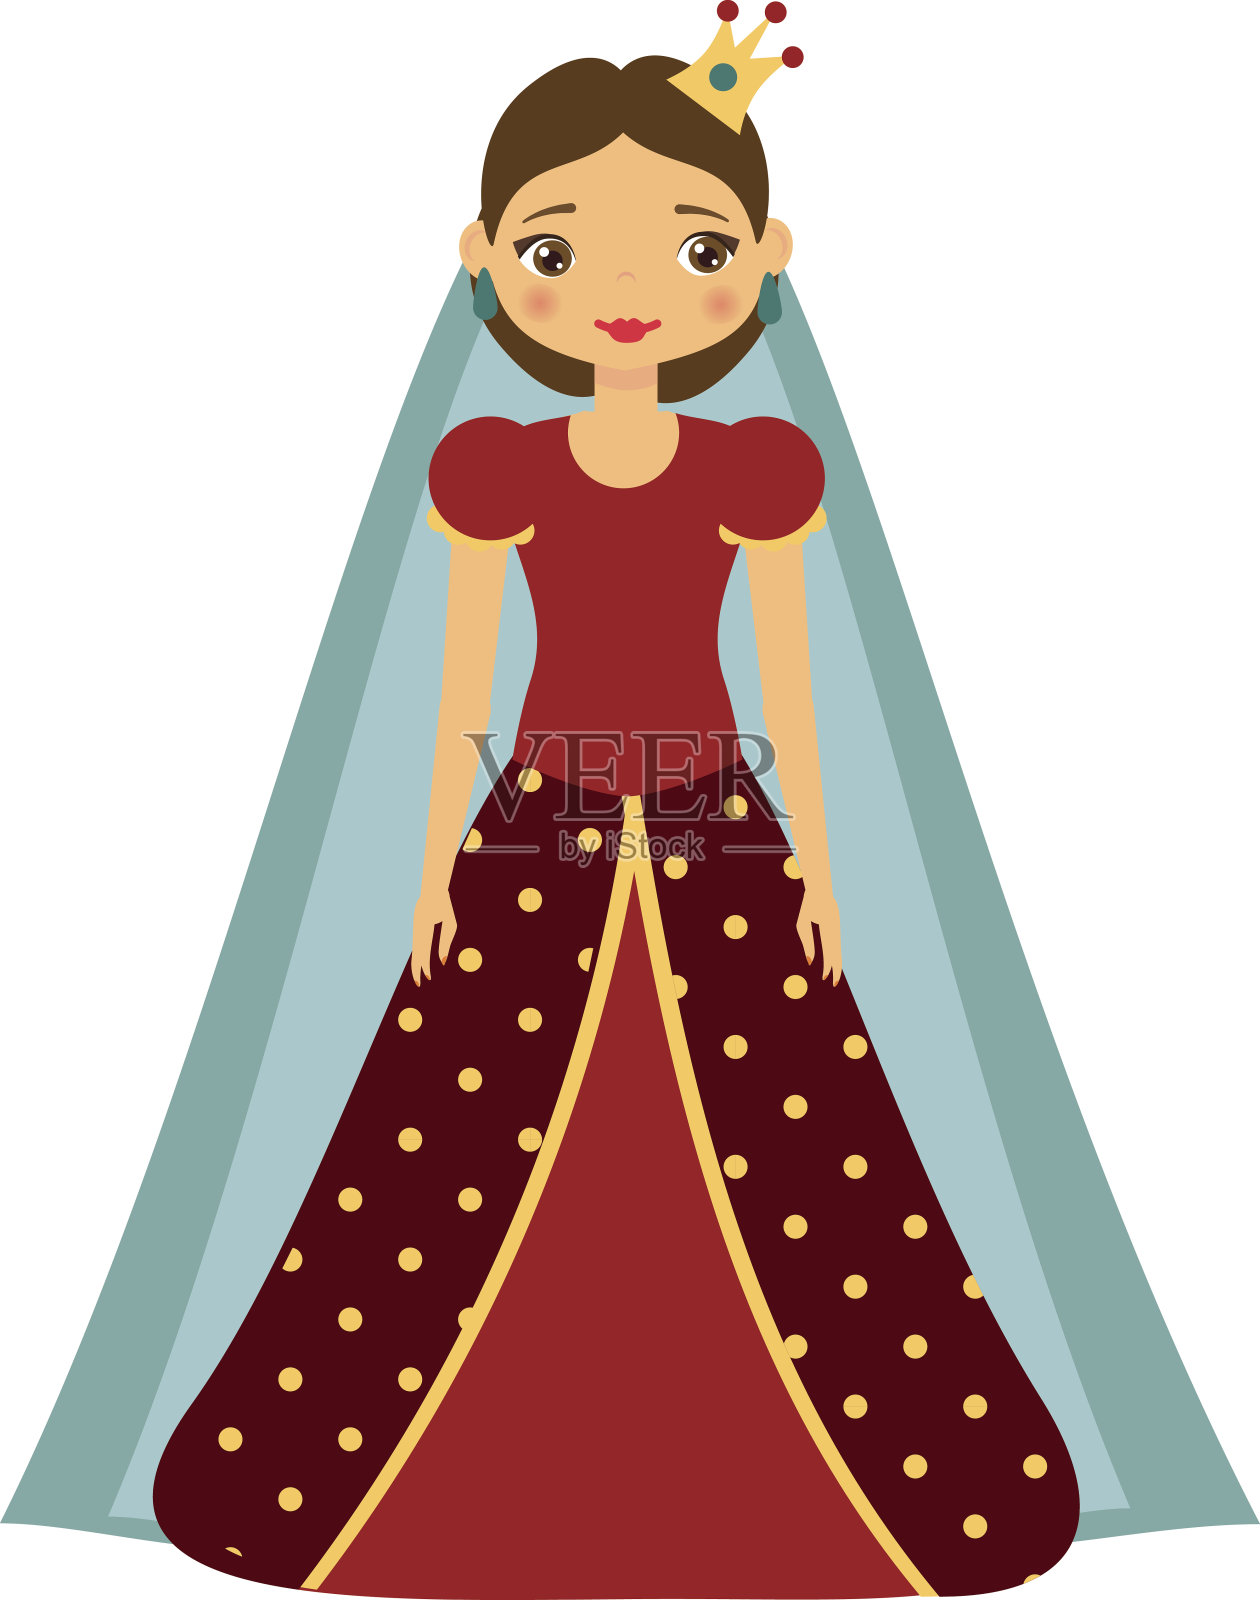 可爱可爱的童话公主穿着红色的裙子和皇冠。穿着女王服装的女孩。卡通风格矢量插图设计元素图片